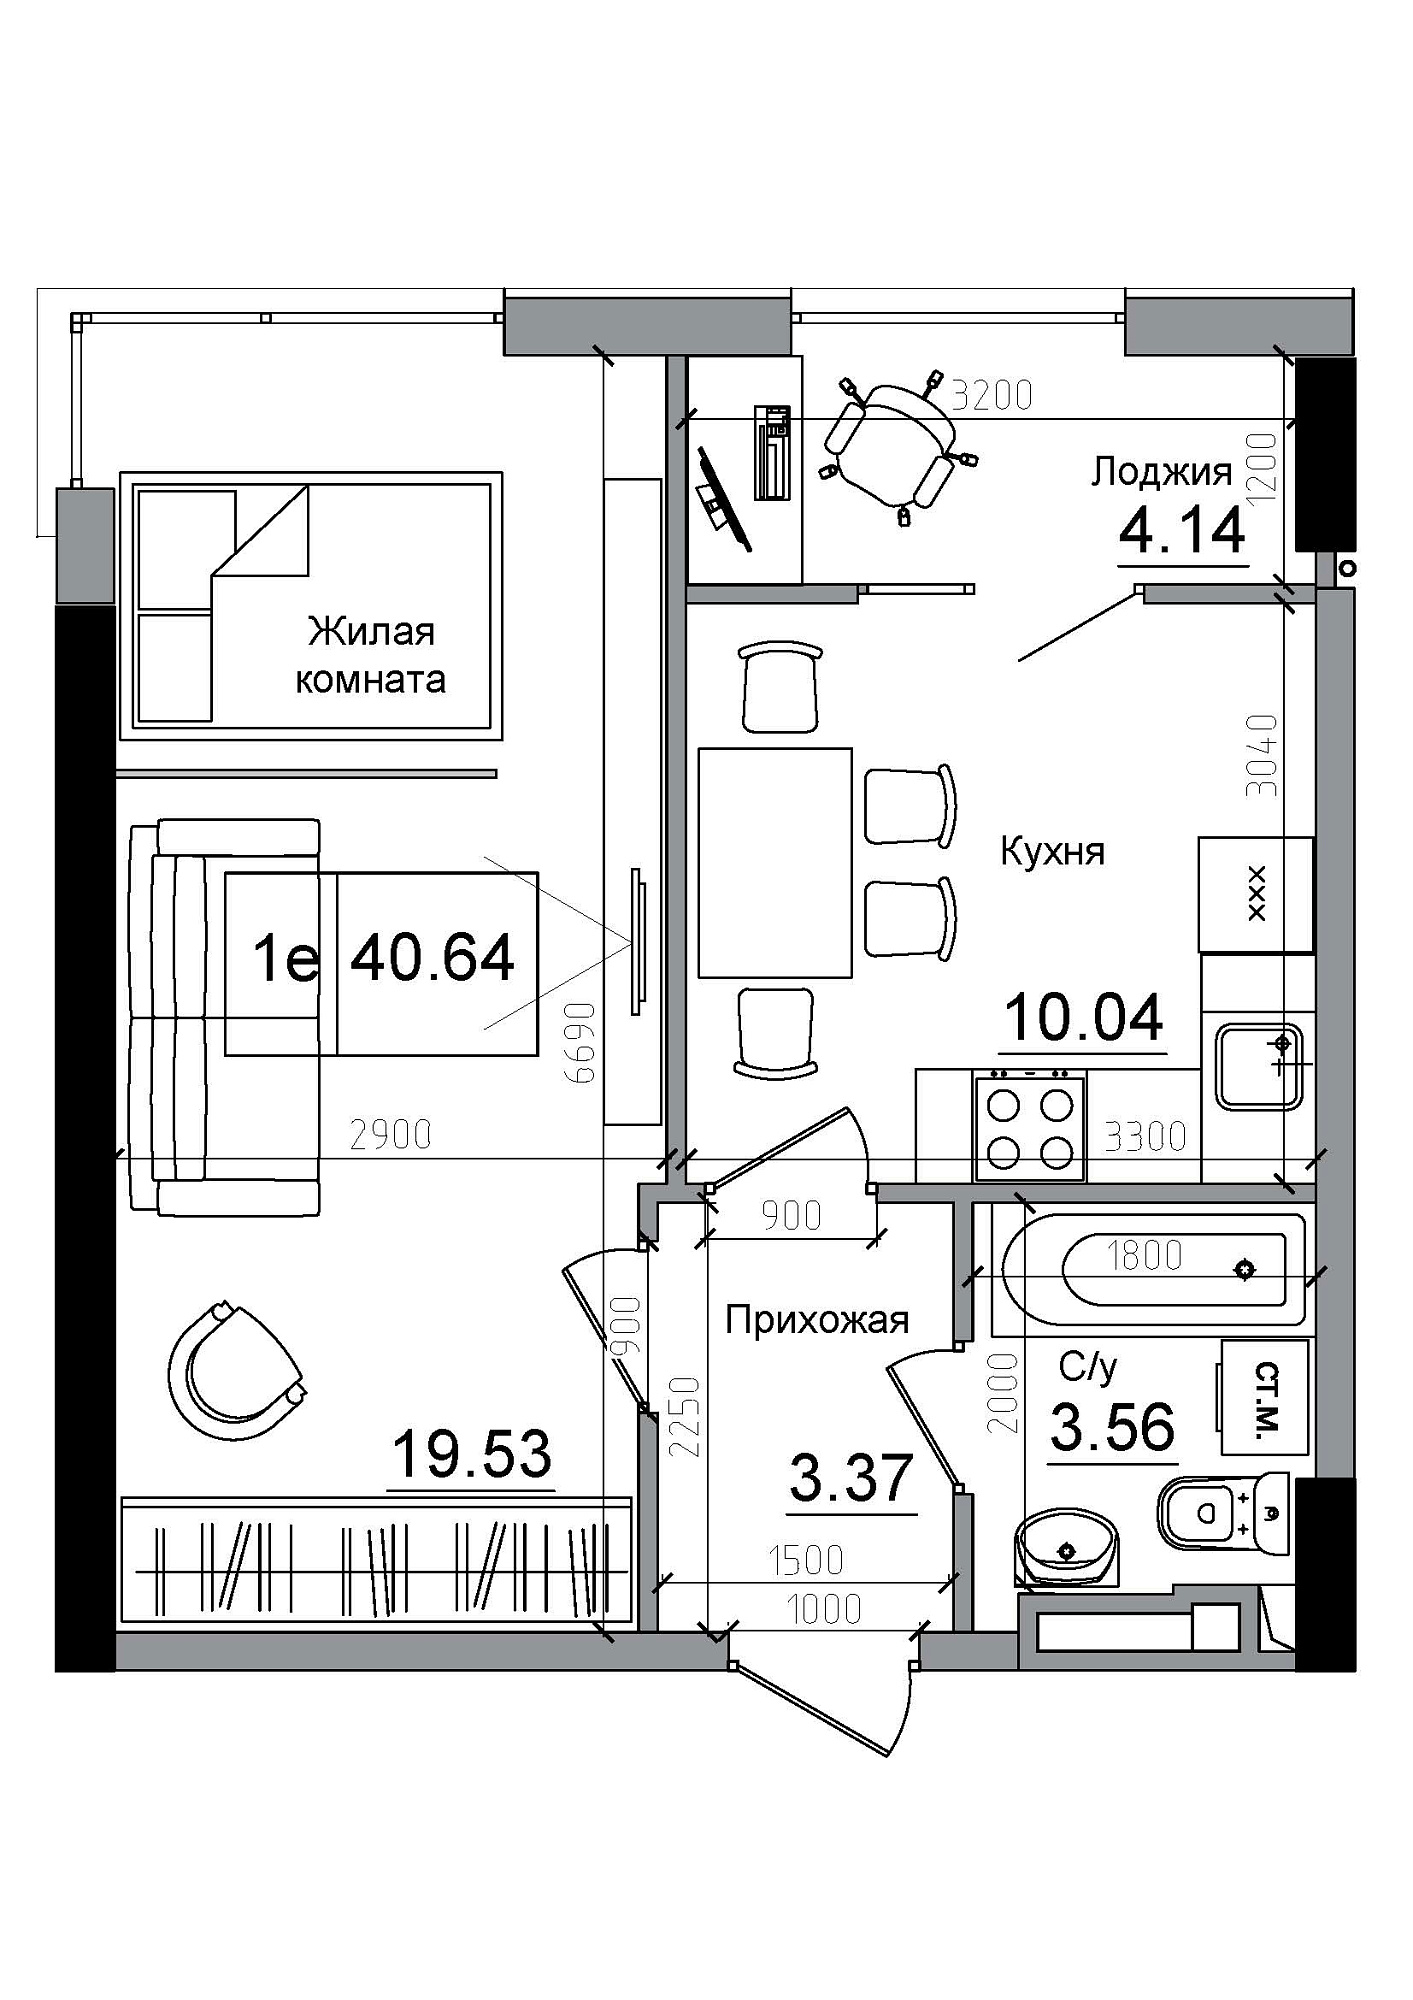 Планування 1-к квартира площею 40.64м2, AB-12-01/00006.